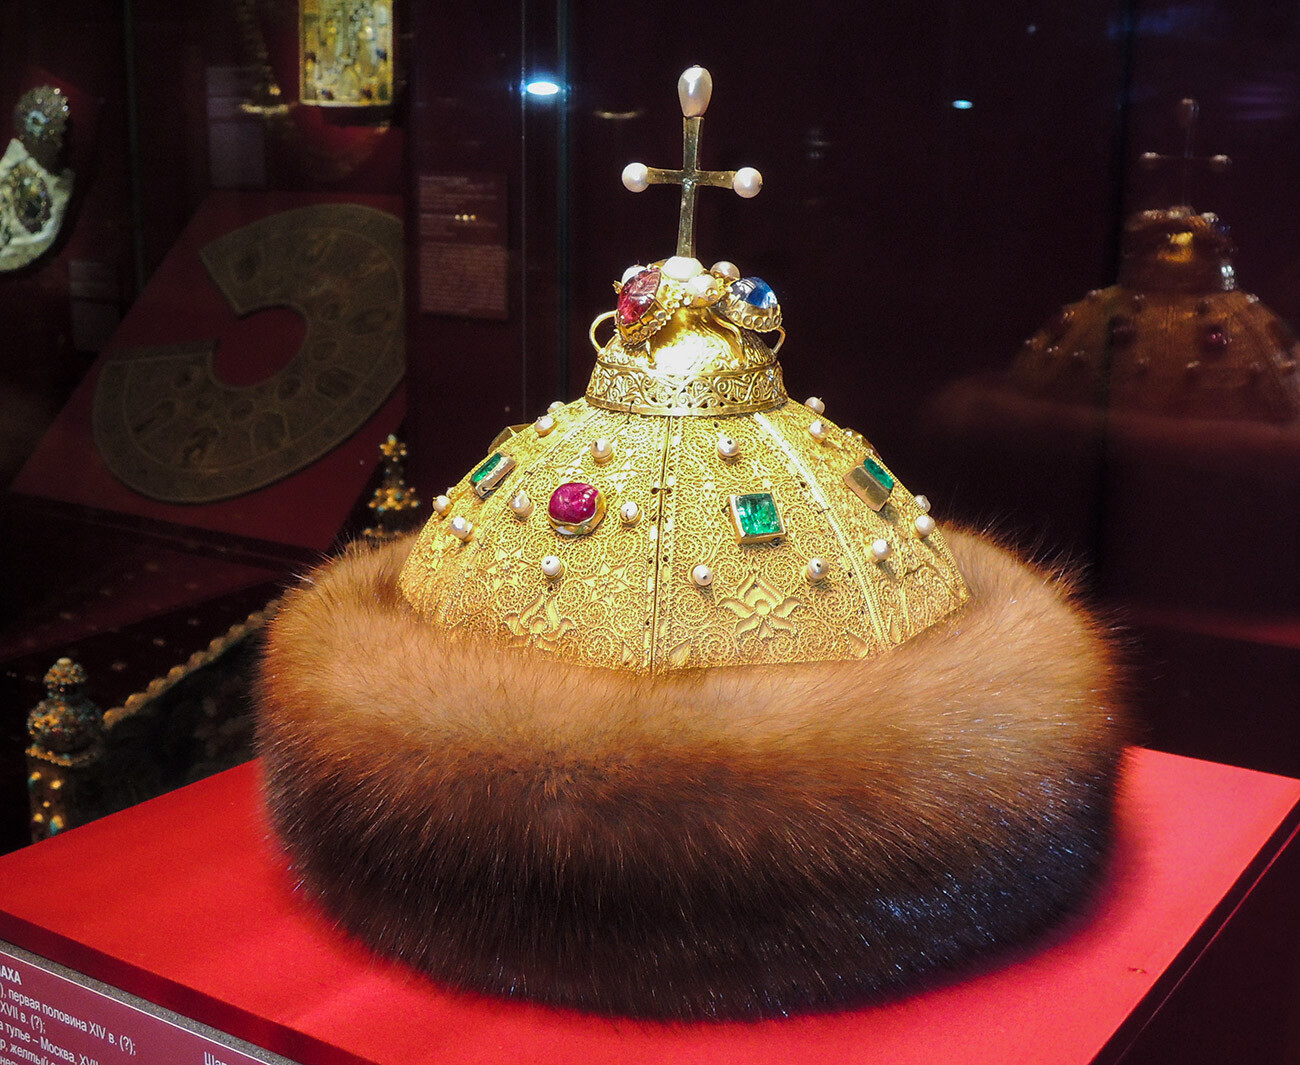 La Corona di Monomaco (in russo: Shapka Monomakha),  la più antica delle corone attualmente esposte nell’Armeria del Cremlino di Mosca